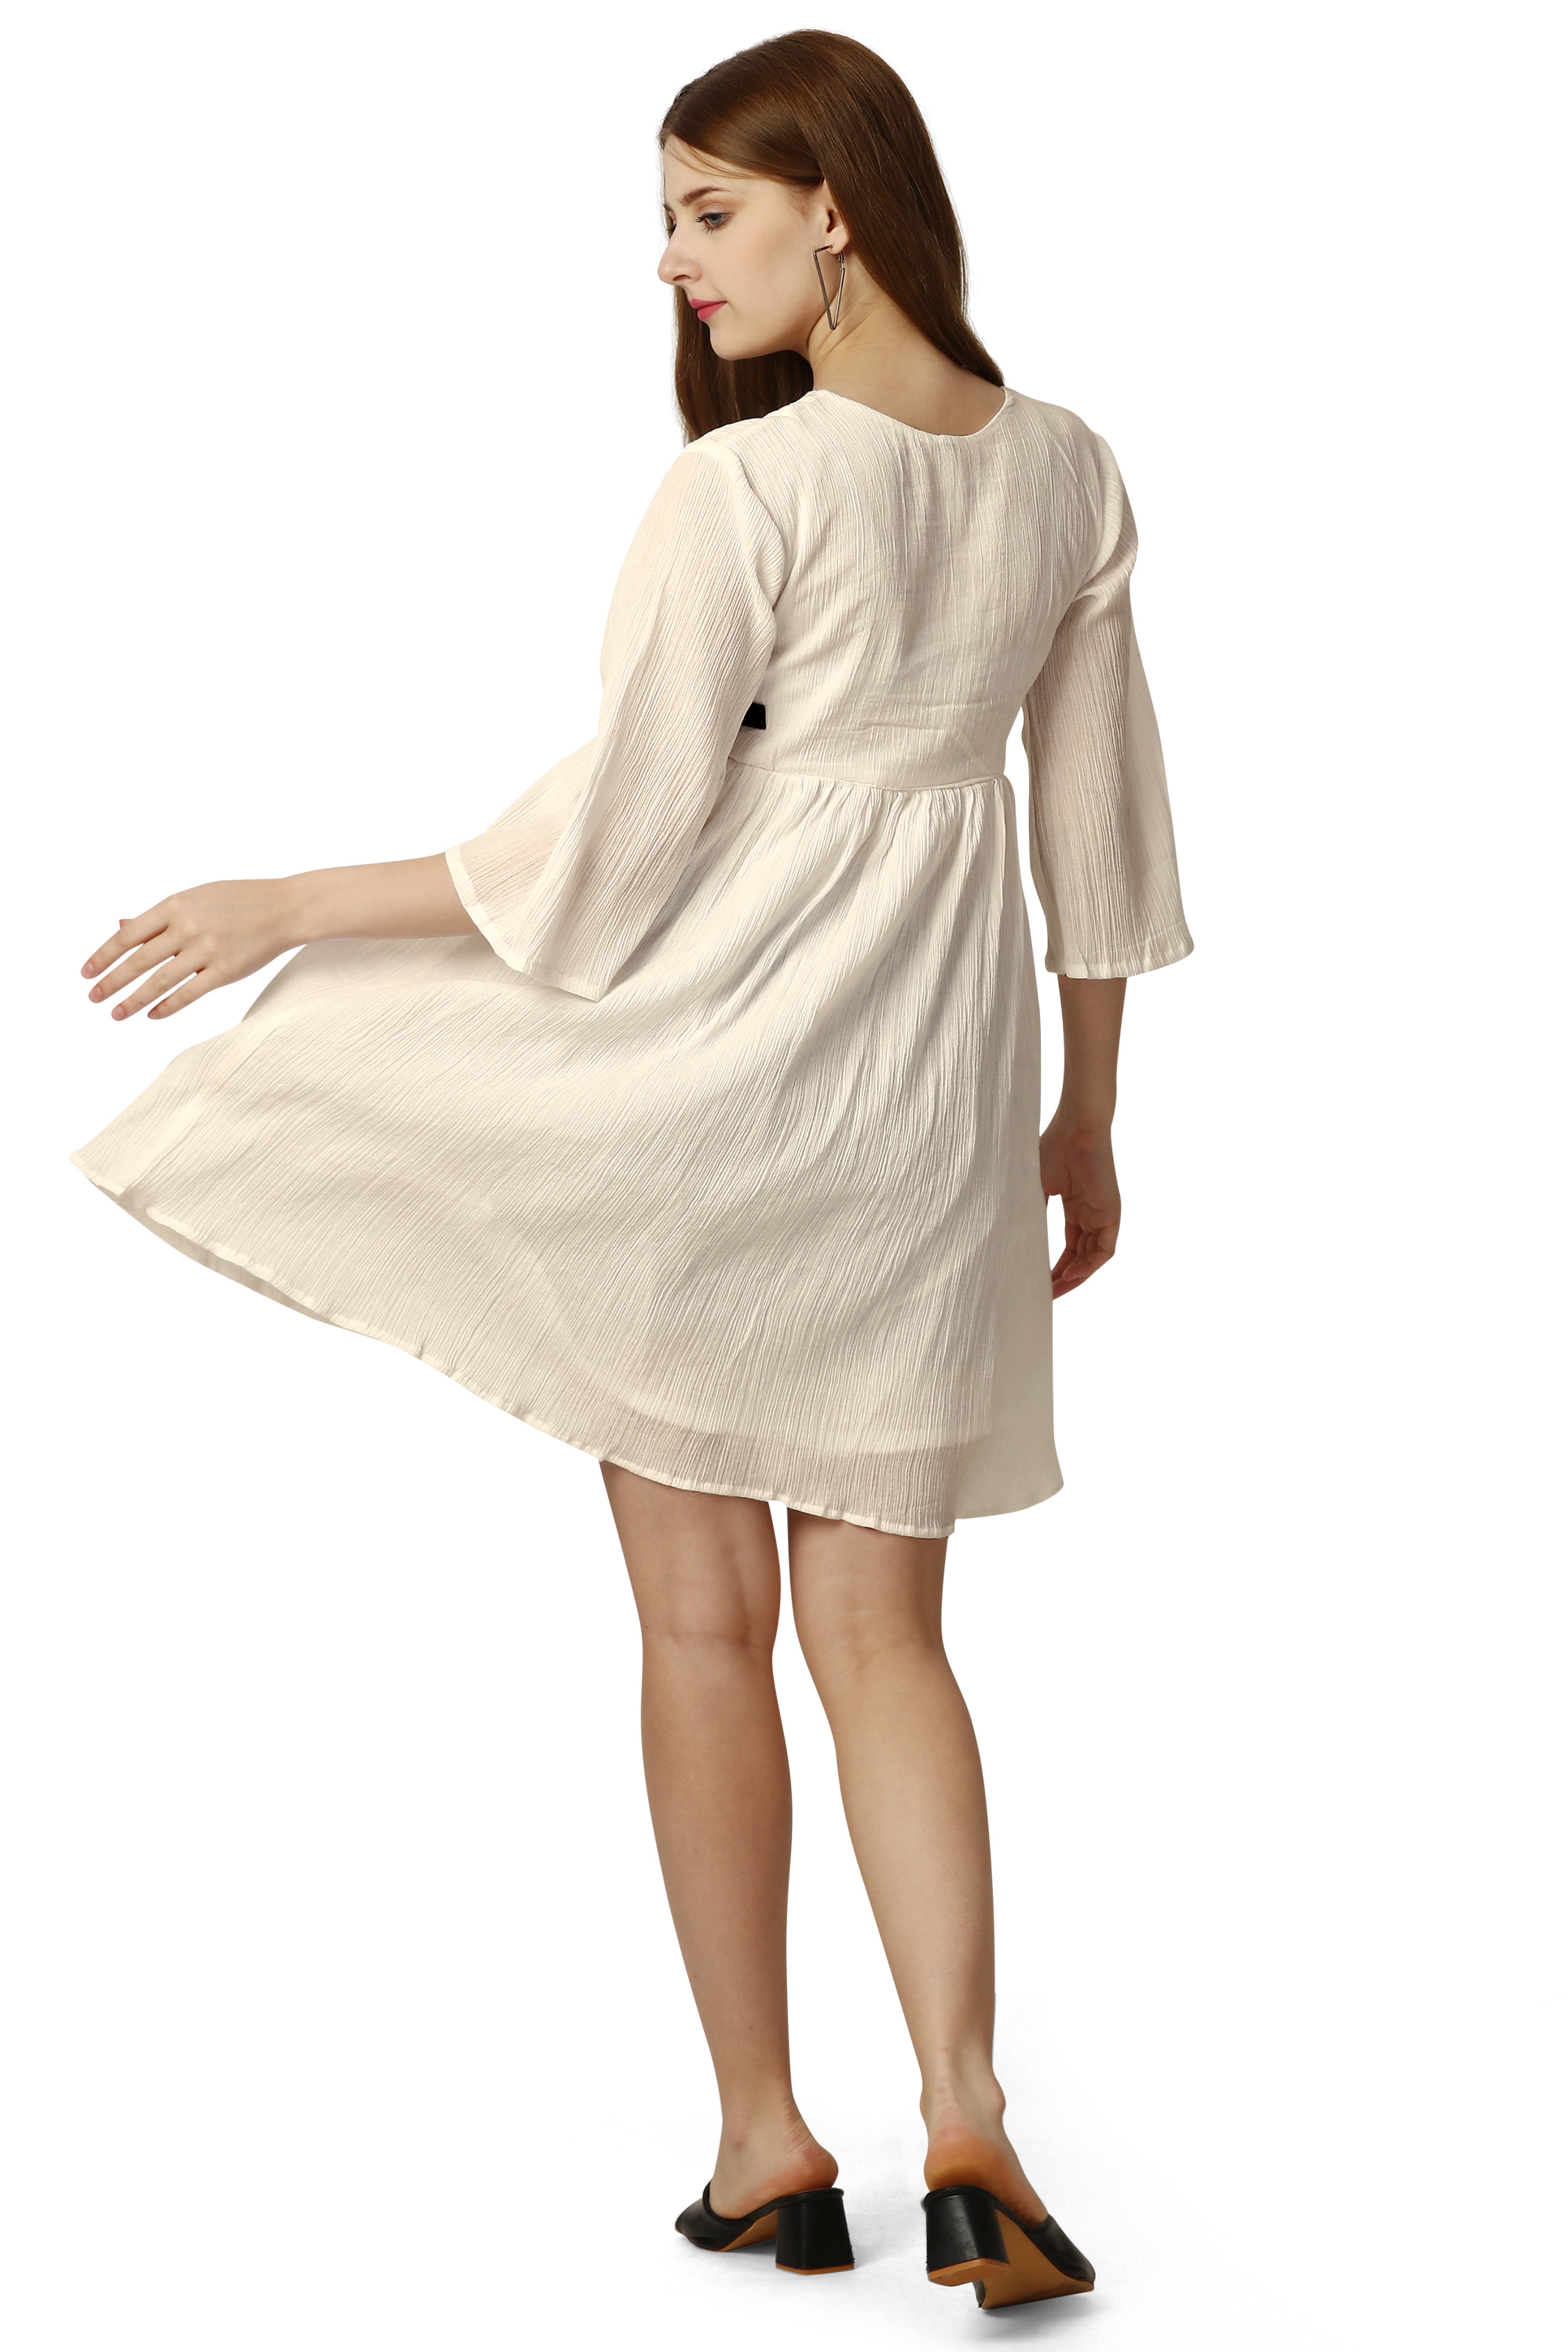 Antique Beige Premium Cotton Dress